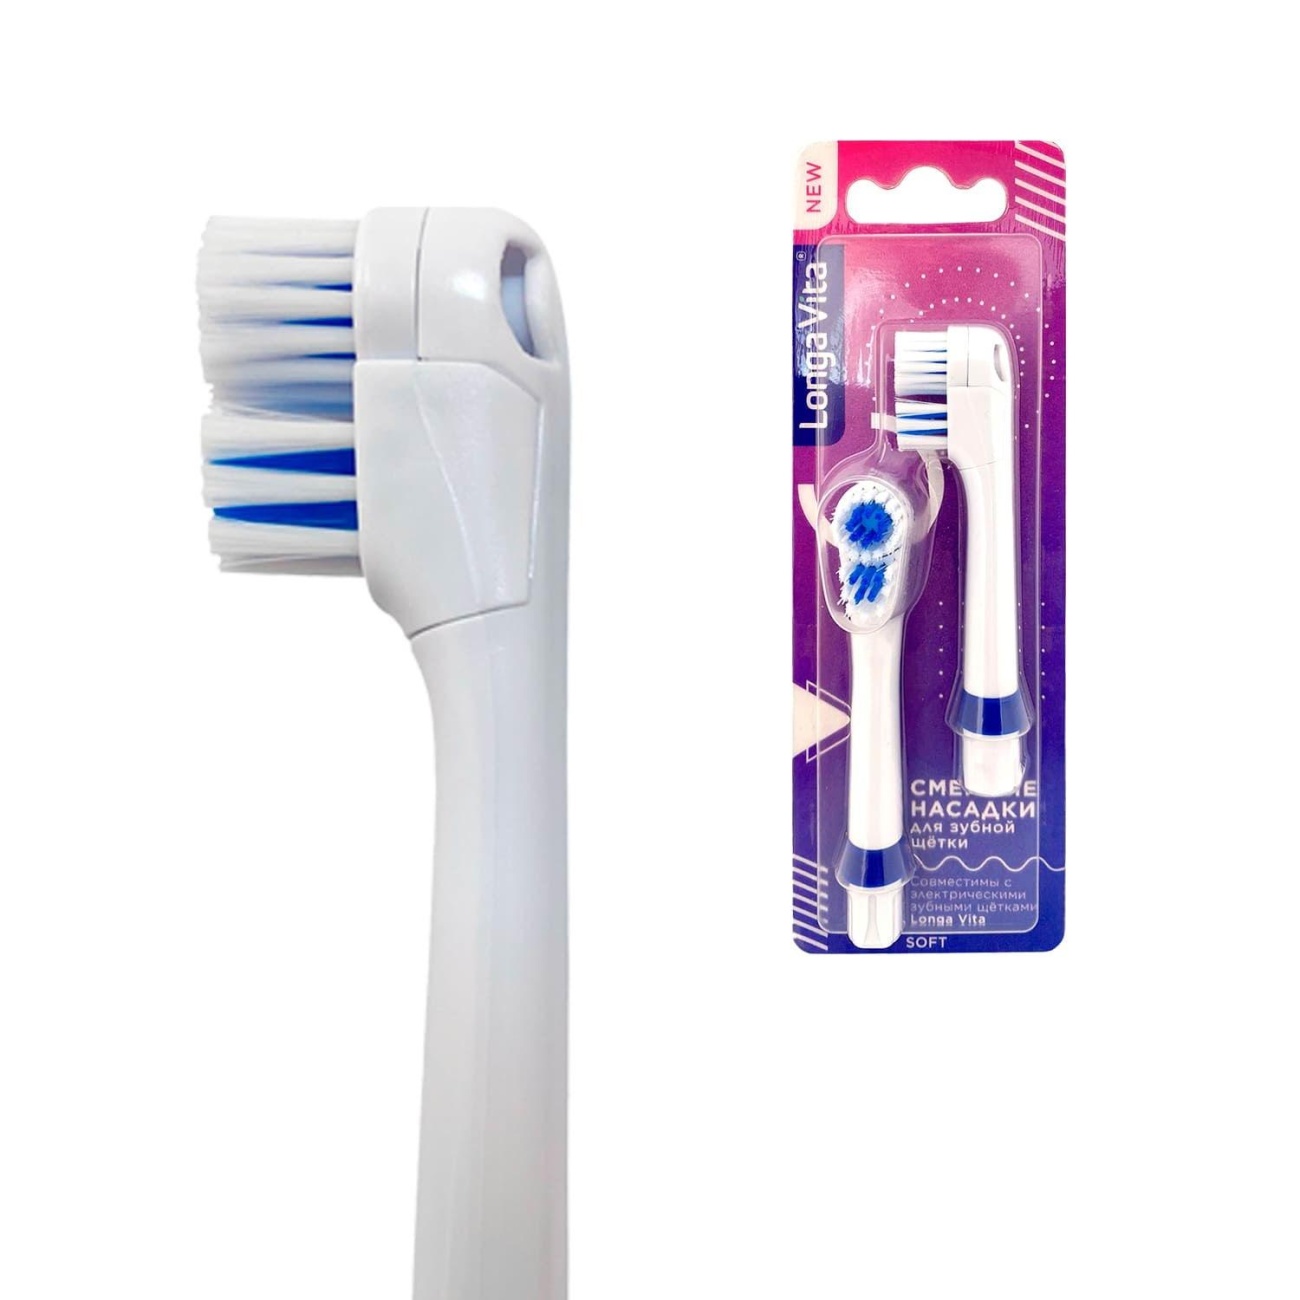 Набор насадок Longa Vita д/электрической зубной щётки, сменные, щетина мягкая NS-НТМ